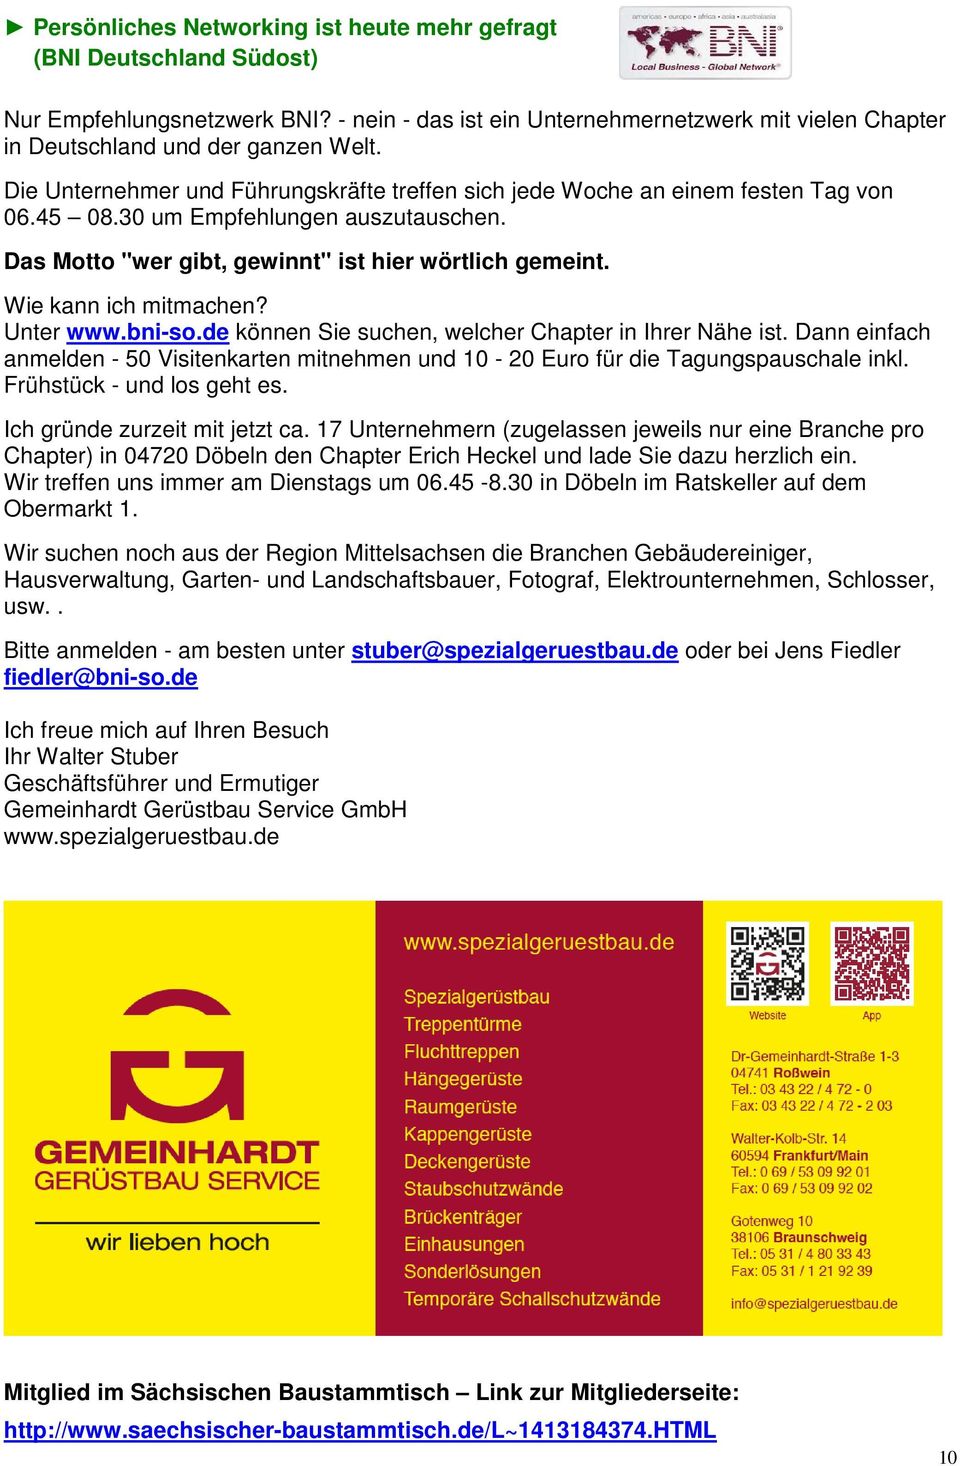 Wie kann ich mitmachen? Unter www.bni-so.de können Sie suchen, welcher Chapter in Ihrer Nähe ist. Dann einfach anmelden - 50 Visitenkarten mitnehmen und 10-20 Euro für die Tagungspauschale inkl.